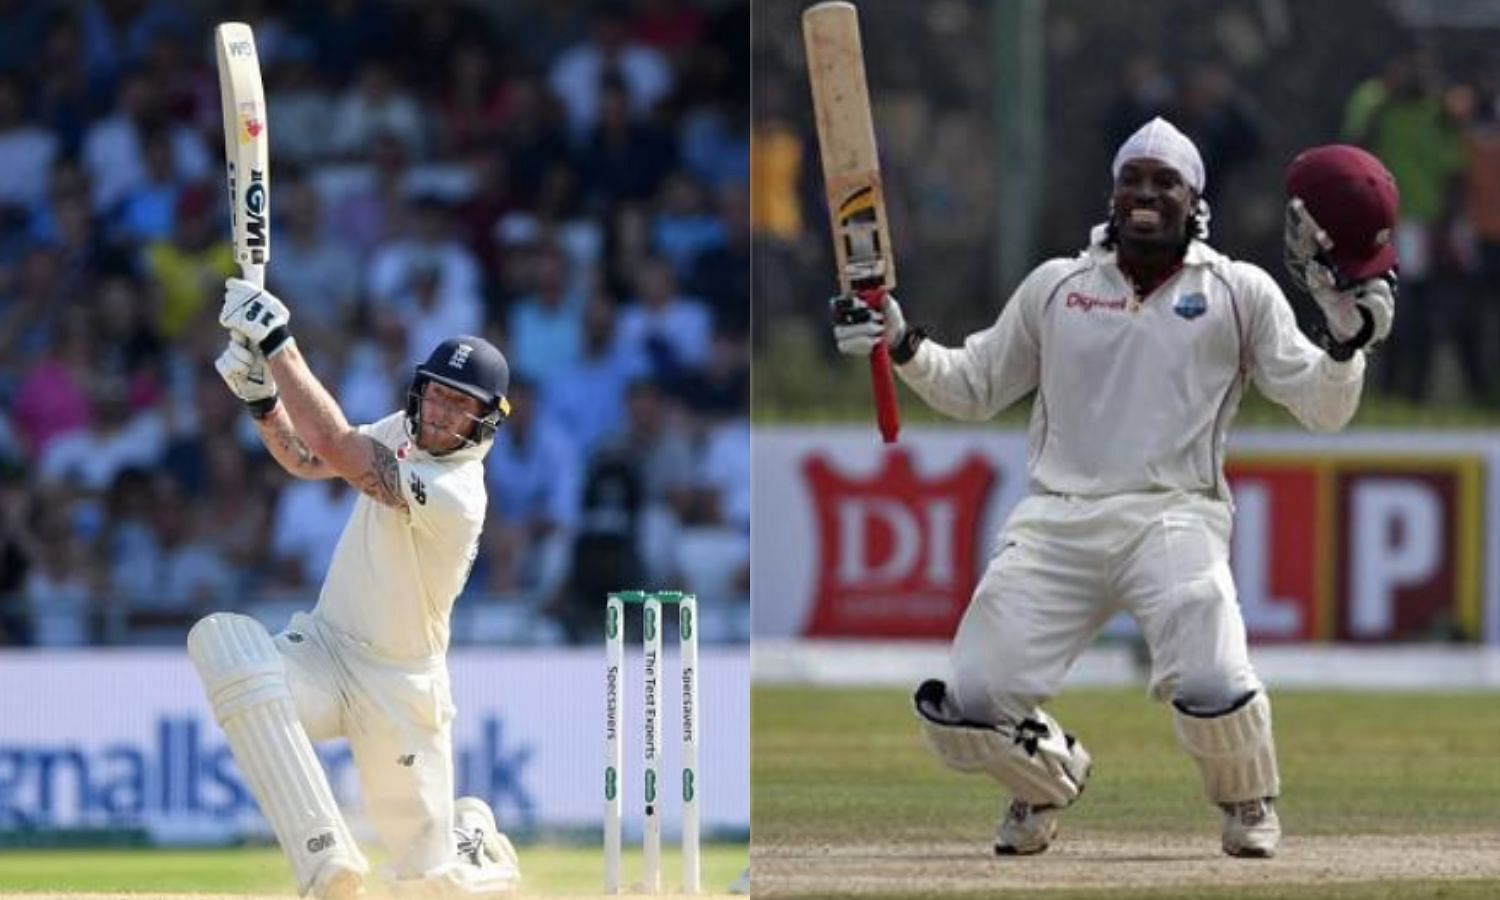 टेस्ट क्रिकेट में सबसे ज्यादा 107 छक्के लगाने का वर्ल्ड रिकॉर्ड न्यूज़ीलैंड के पूर्व कप्तान ब्रैंडन मैकलम के नाम है